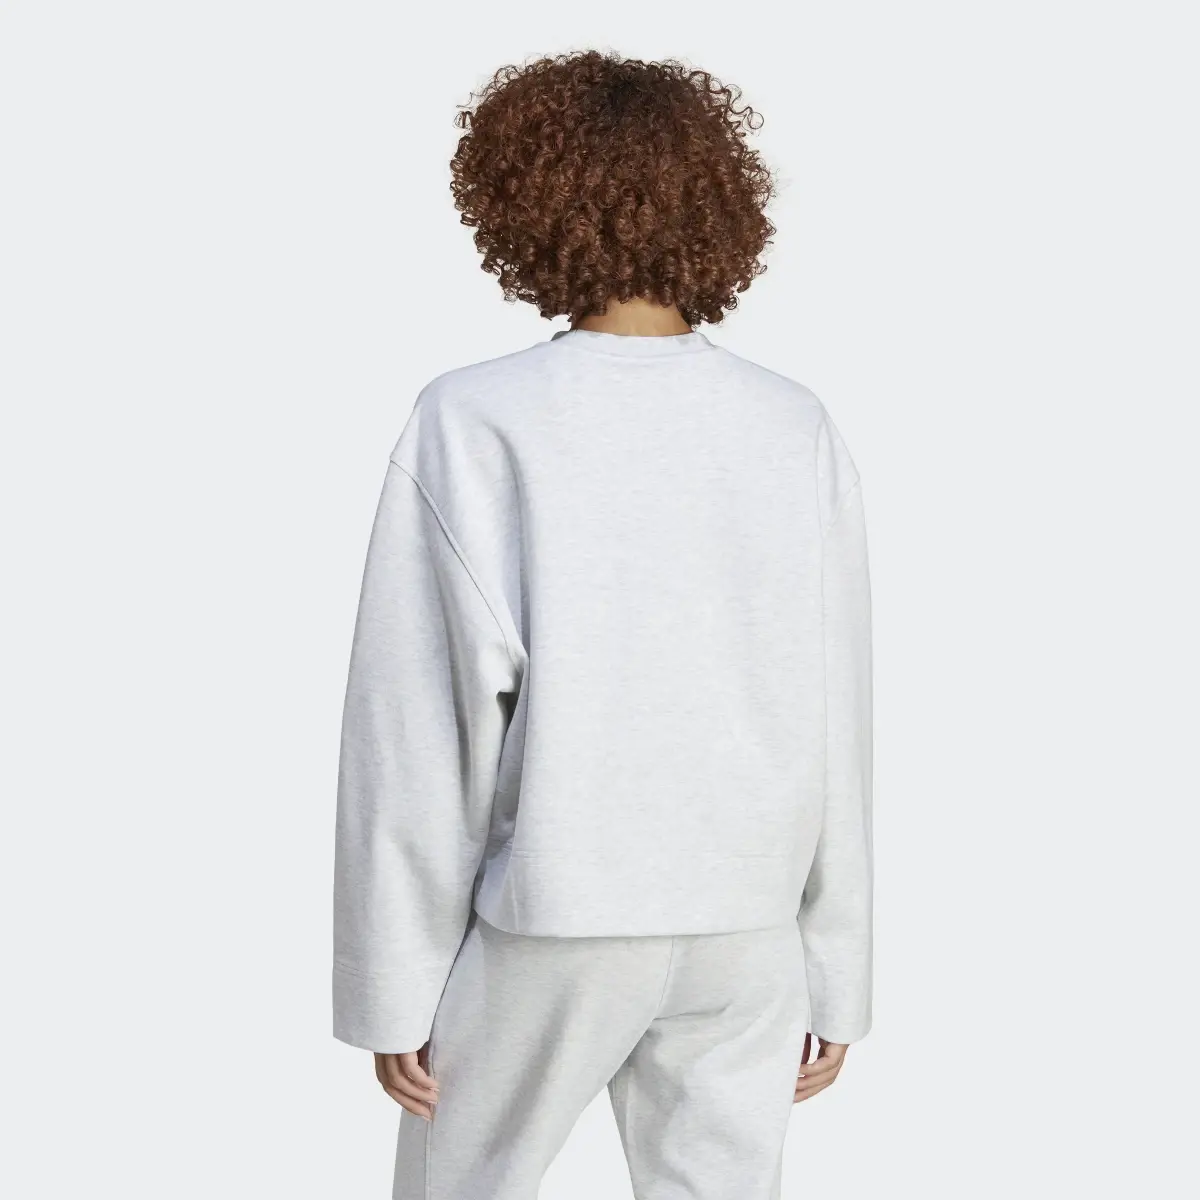 Adidas Premium Essentials Crew Sweater. 2